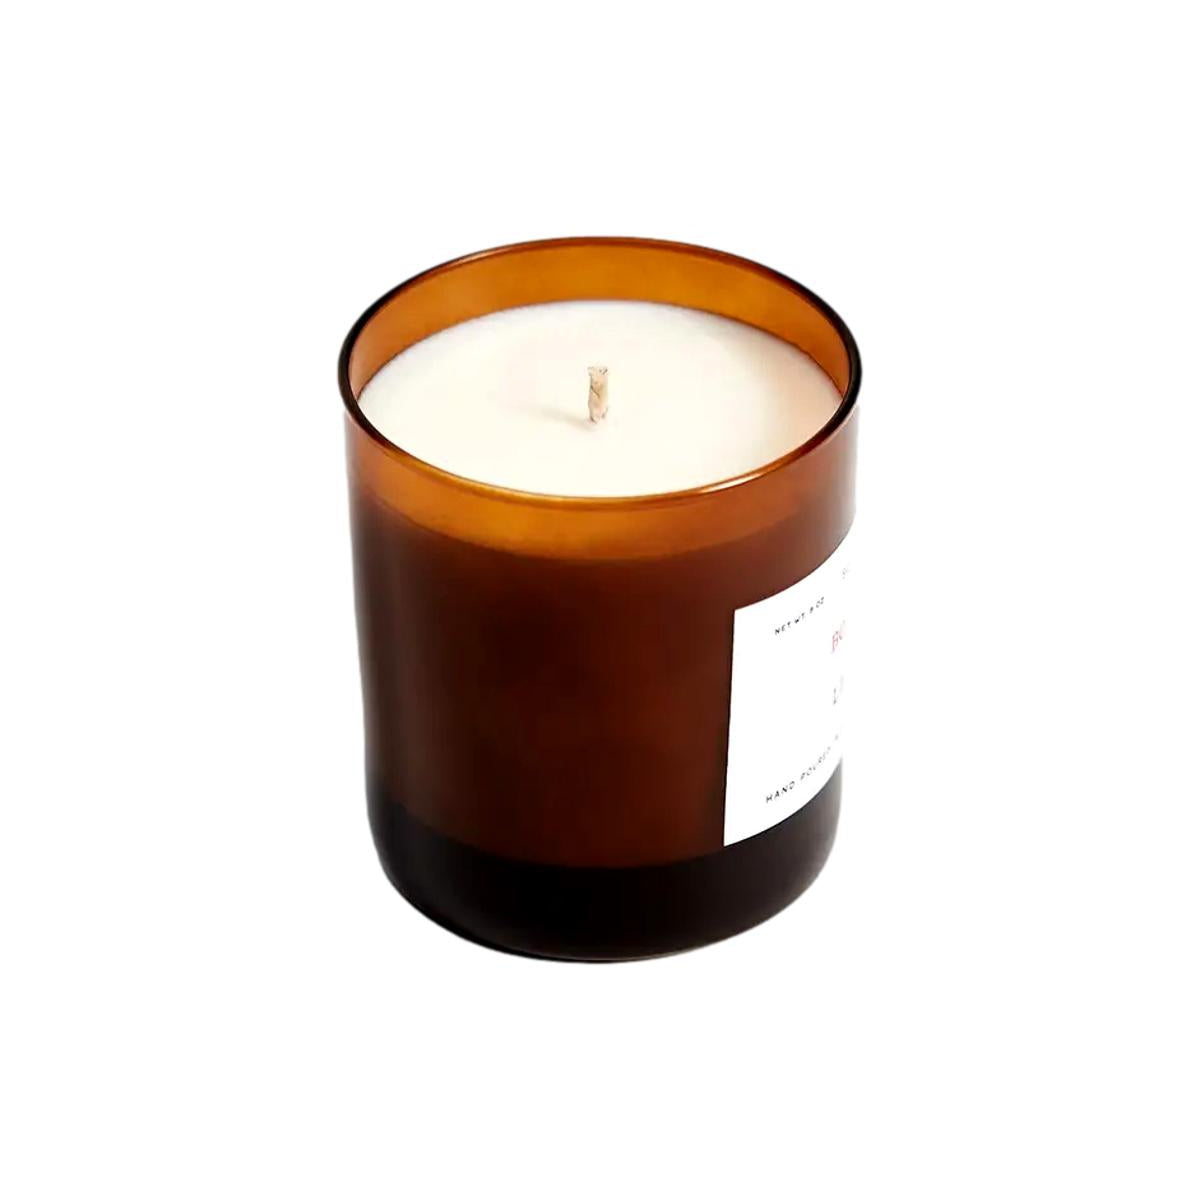 Cinnamon & Cedar Candle - Candles